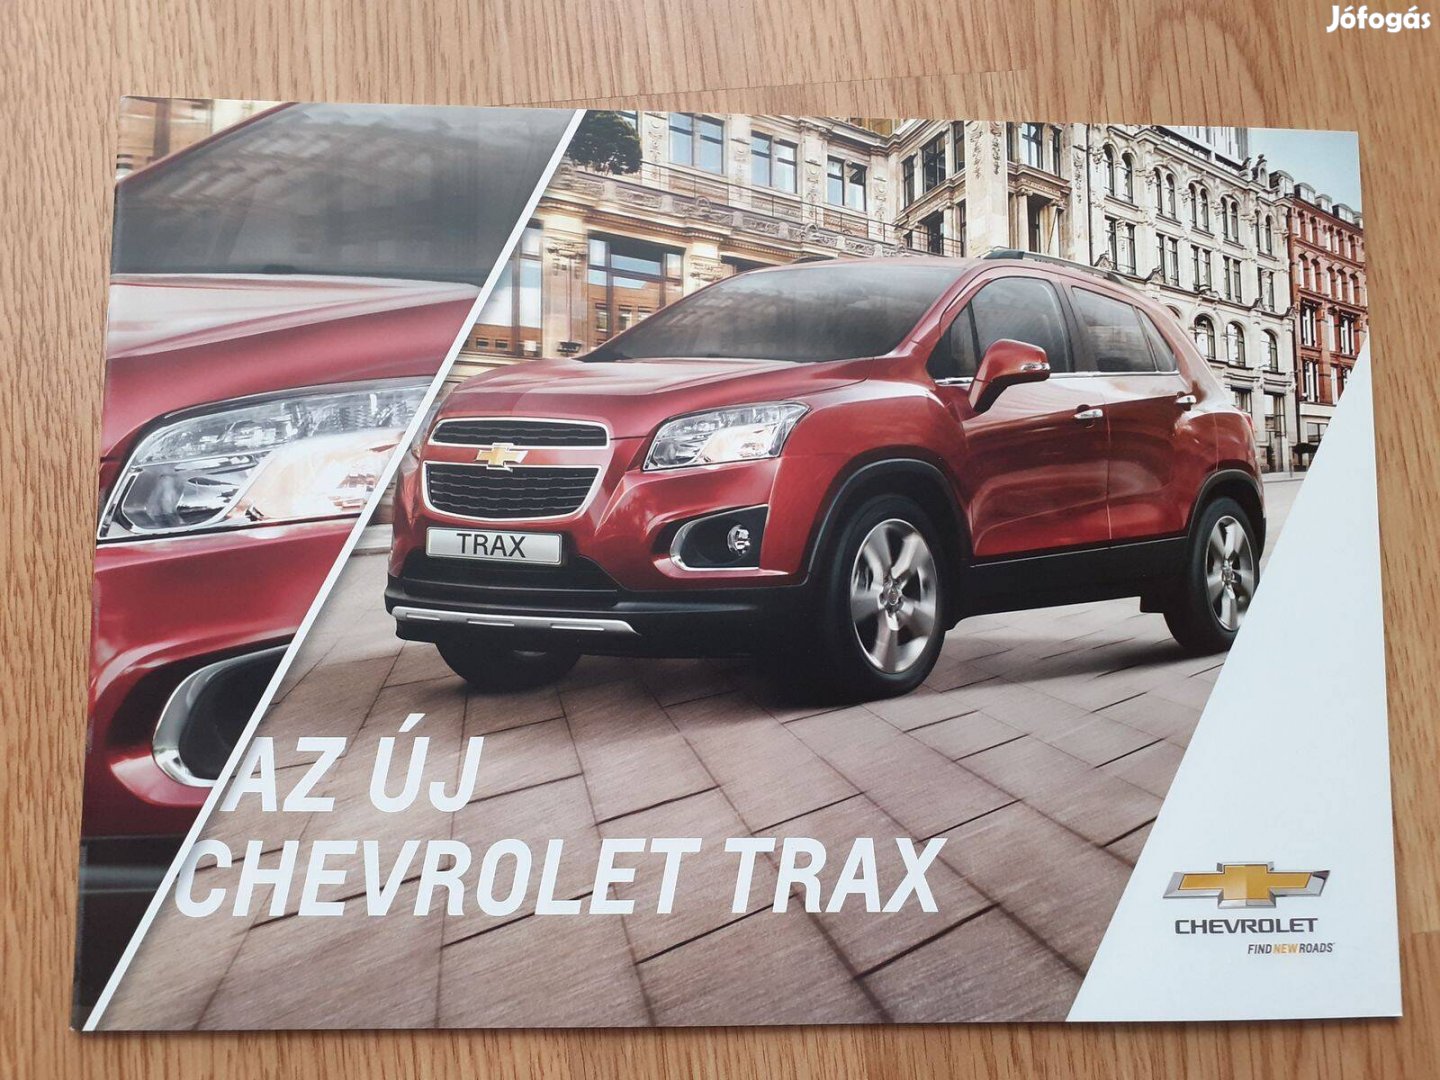 Chevrolet Trax prospektus - 2013, magyar nyelvű